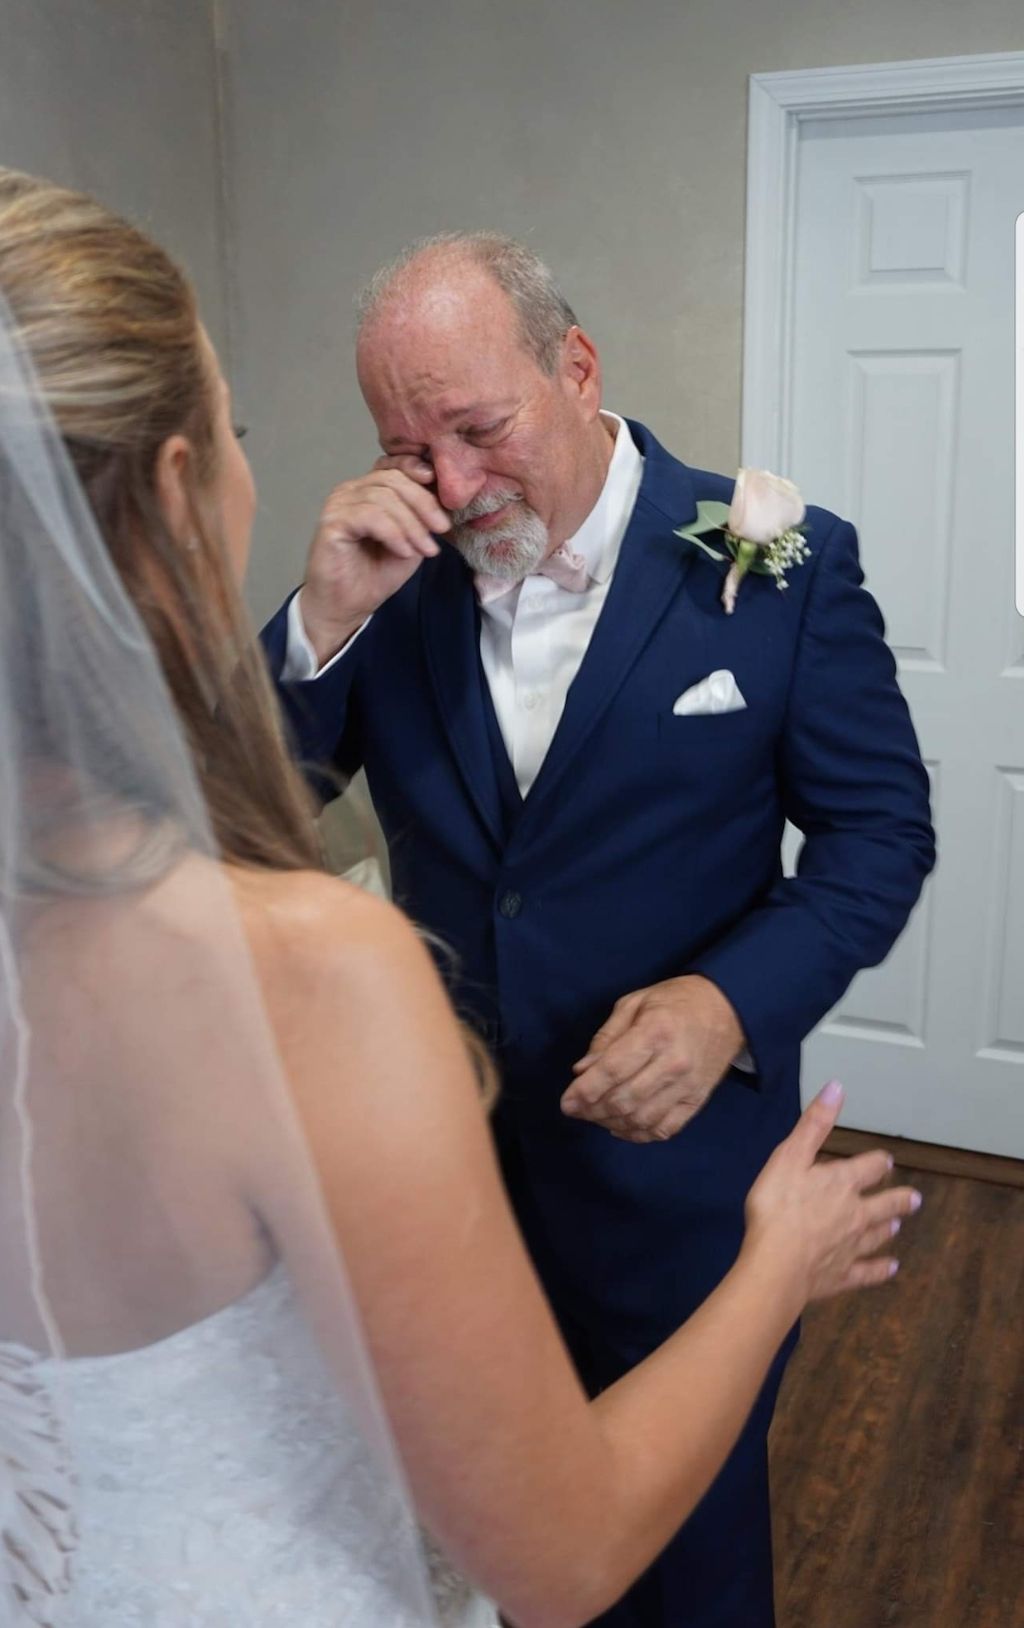 Ši virusinė nuotrauka, kurioje mergaitė verkia per dukters vestuves, visur jungiasi su tėčiais